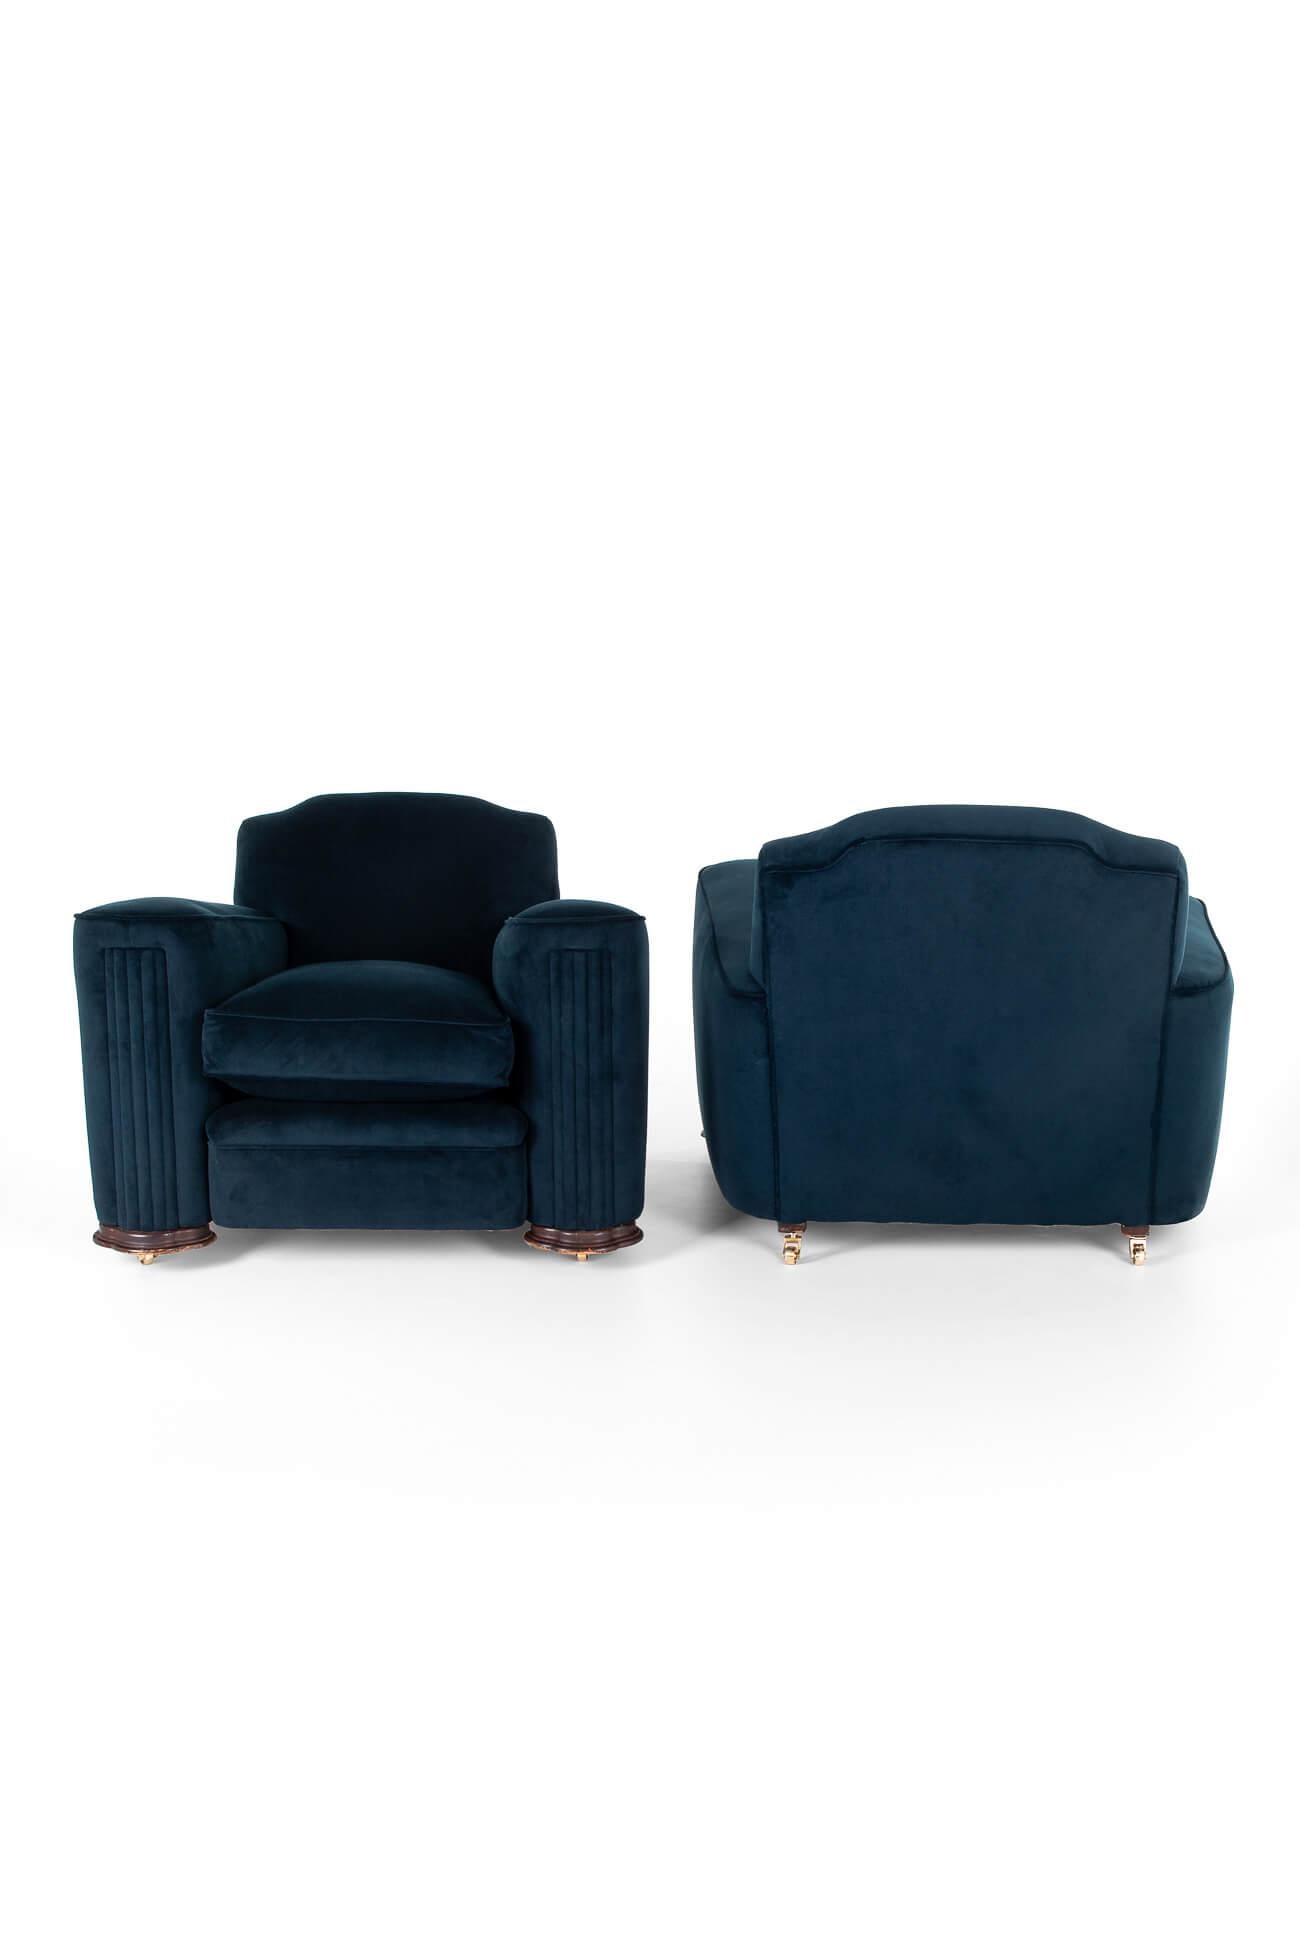 Ein beeindruckendes Paar Art-Deco-Loungesessel mit reichhaltiger marineblauer Polsterung.

Die Sessel haben hohe Rückenlehnen und große, formschöne Säulenarme mit plissierten Vorderseiten, die die großzügigen Sitzflächen umschließen. Beide Stühle